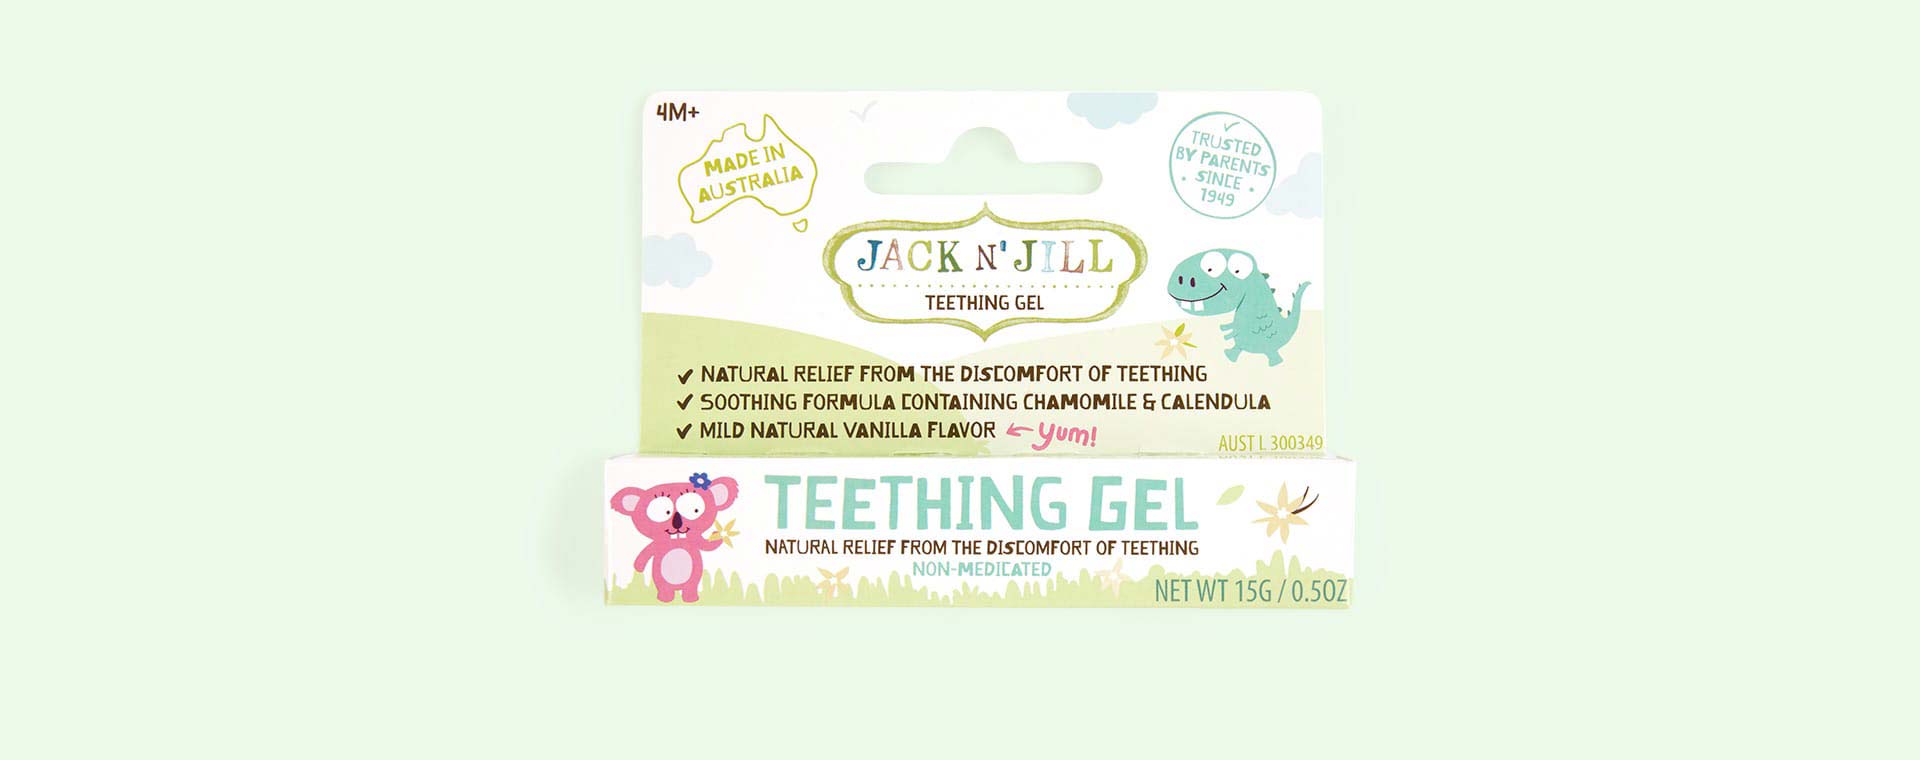 Multi Jack N' Jill Natural Teething Gel